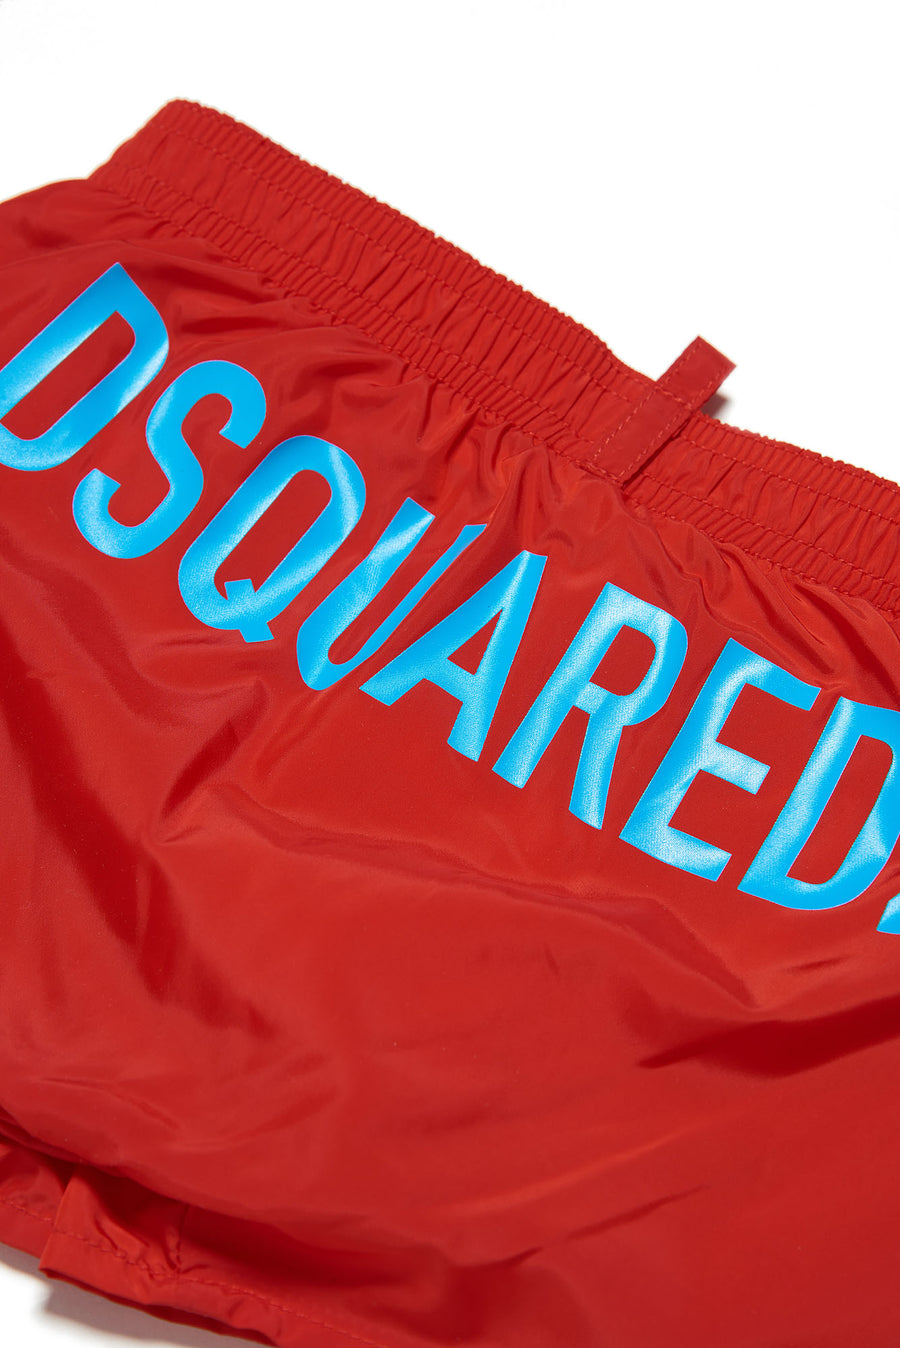 Costume shorts rosso con stampa azzurra